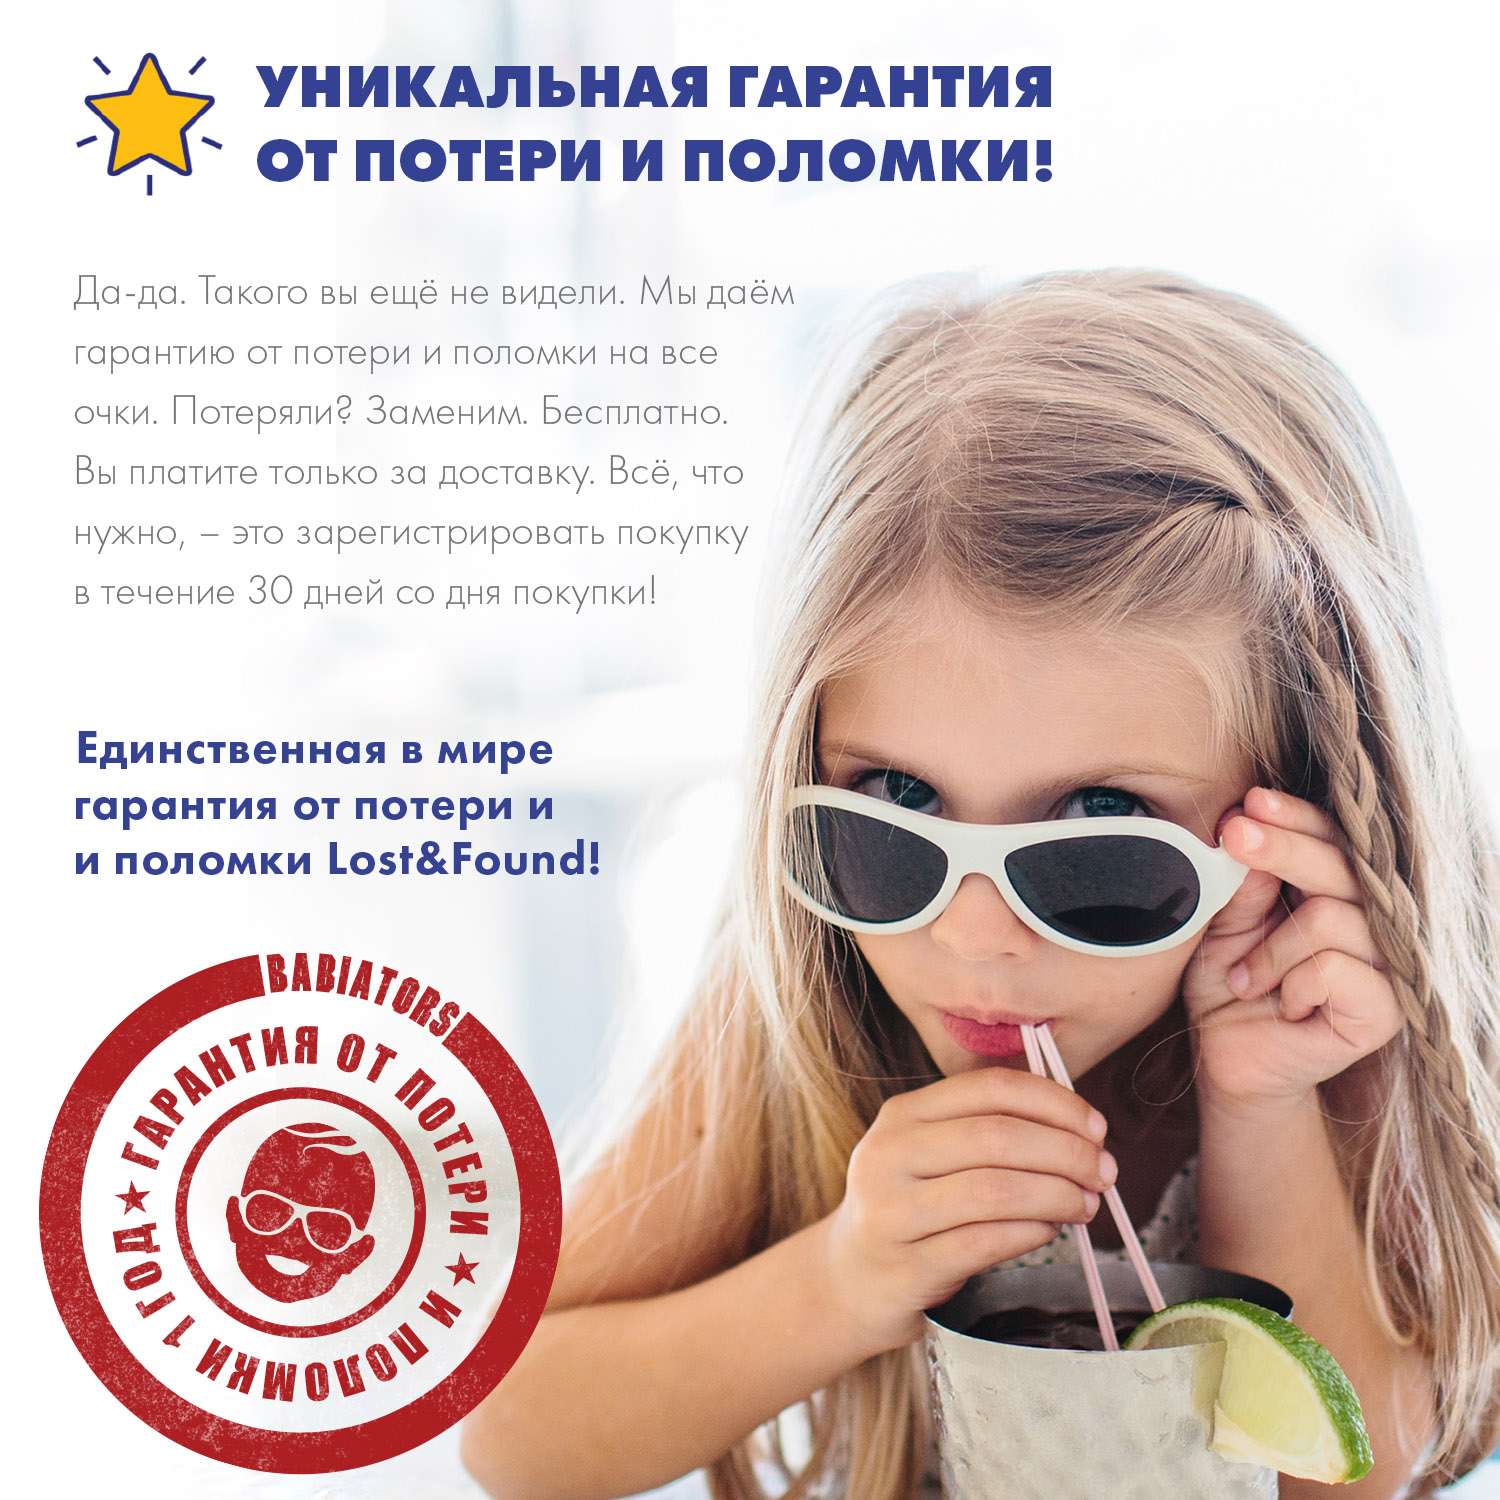 Солнцезащитные очки Babiators Navigator Printed Светская красавица 3-5 LTD-056 - фото 4